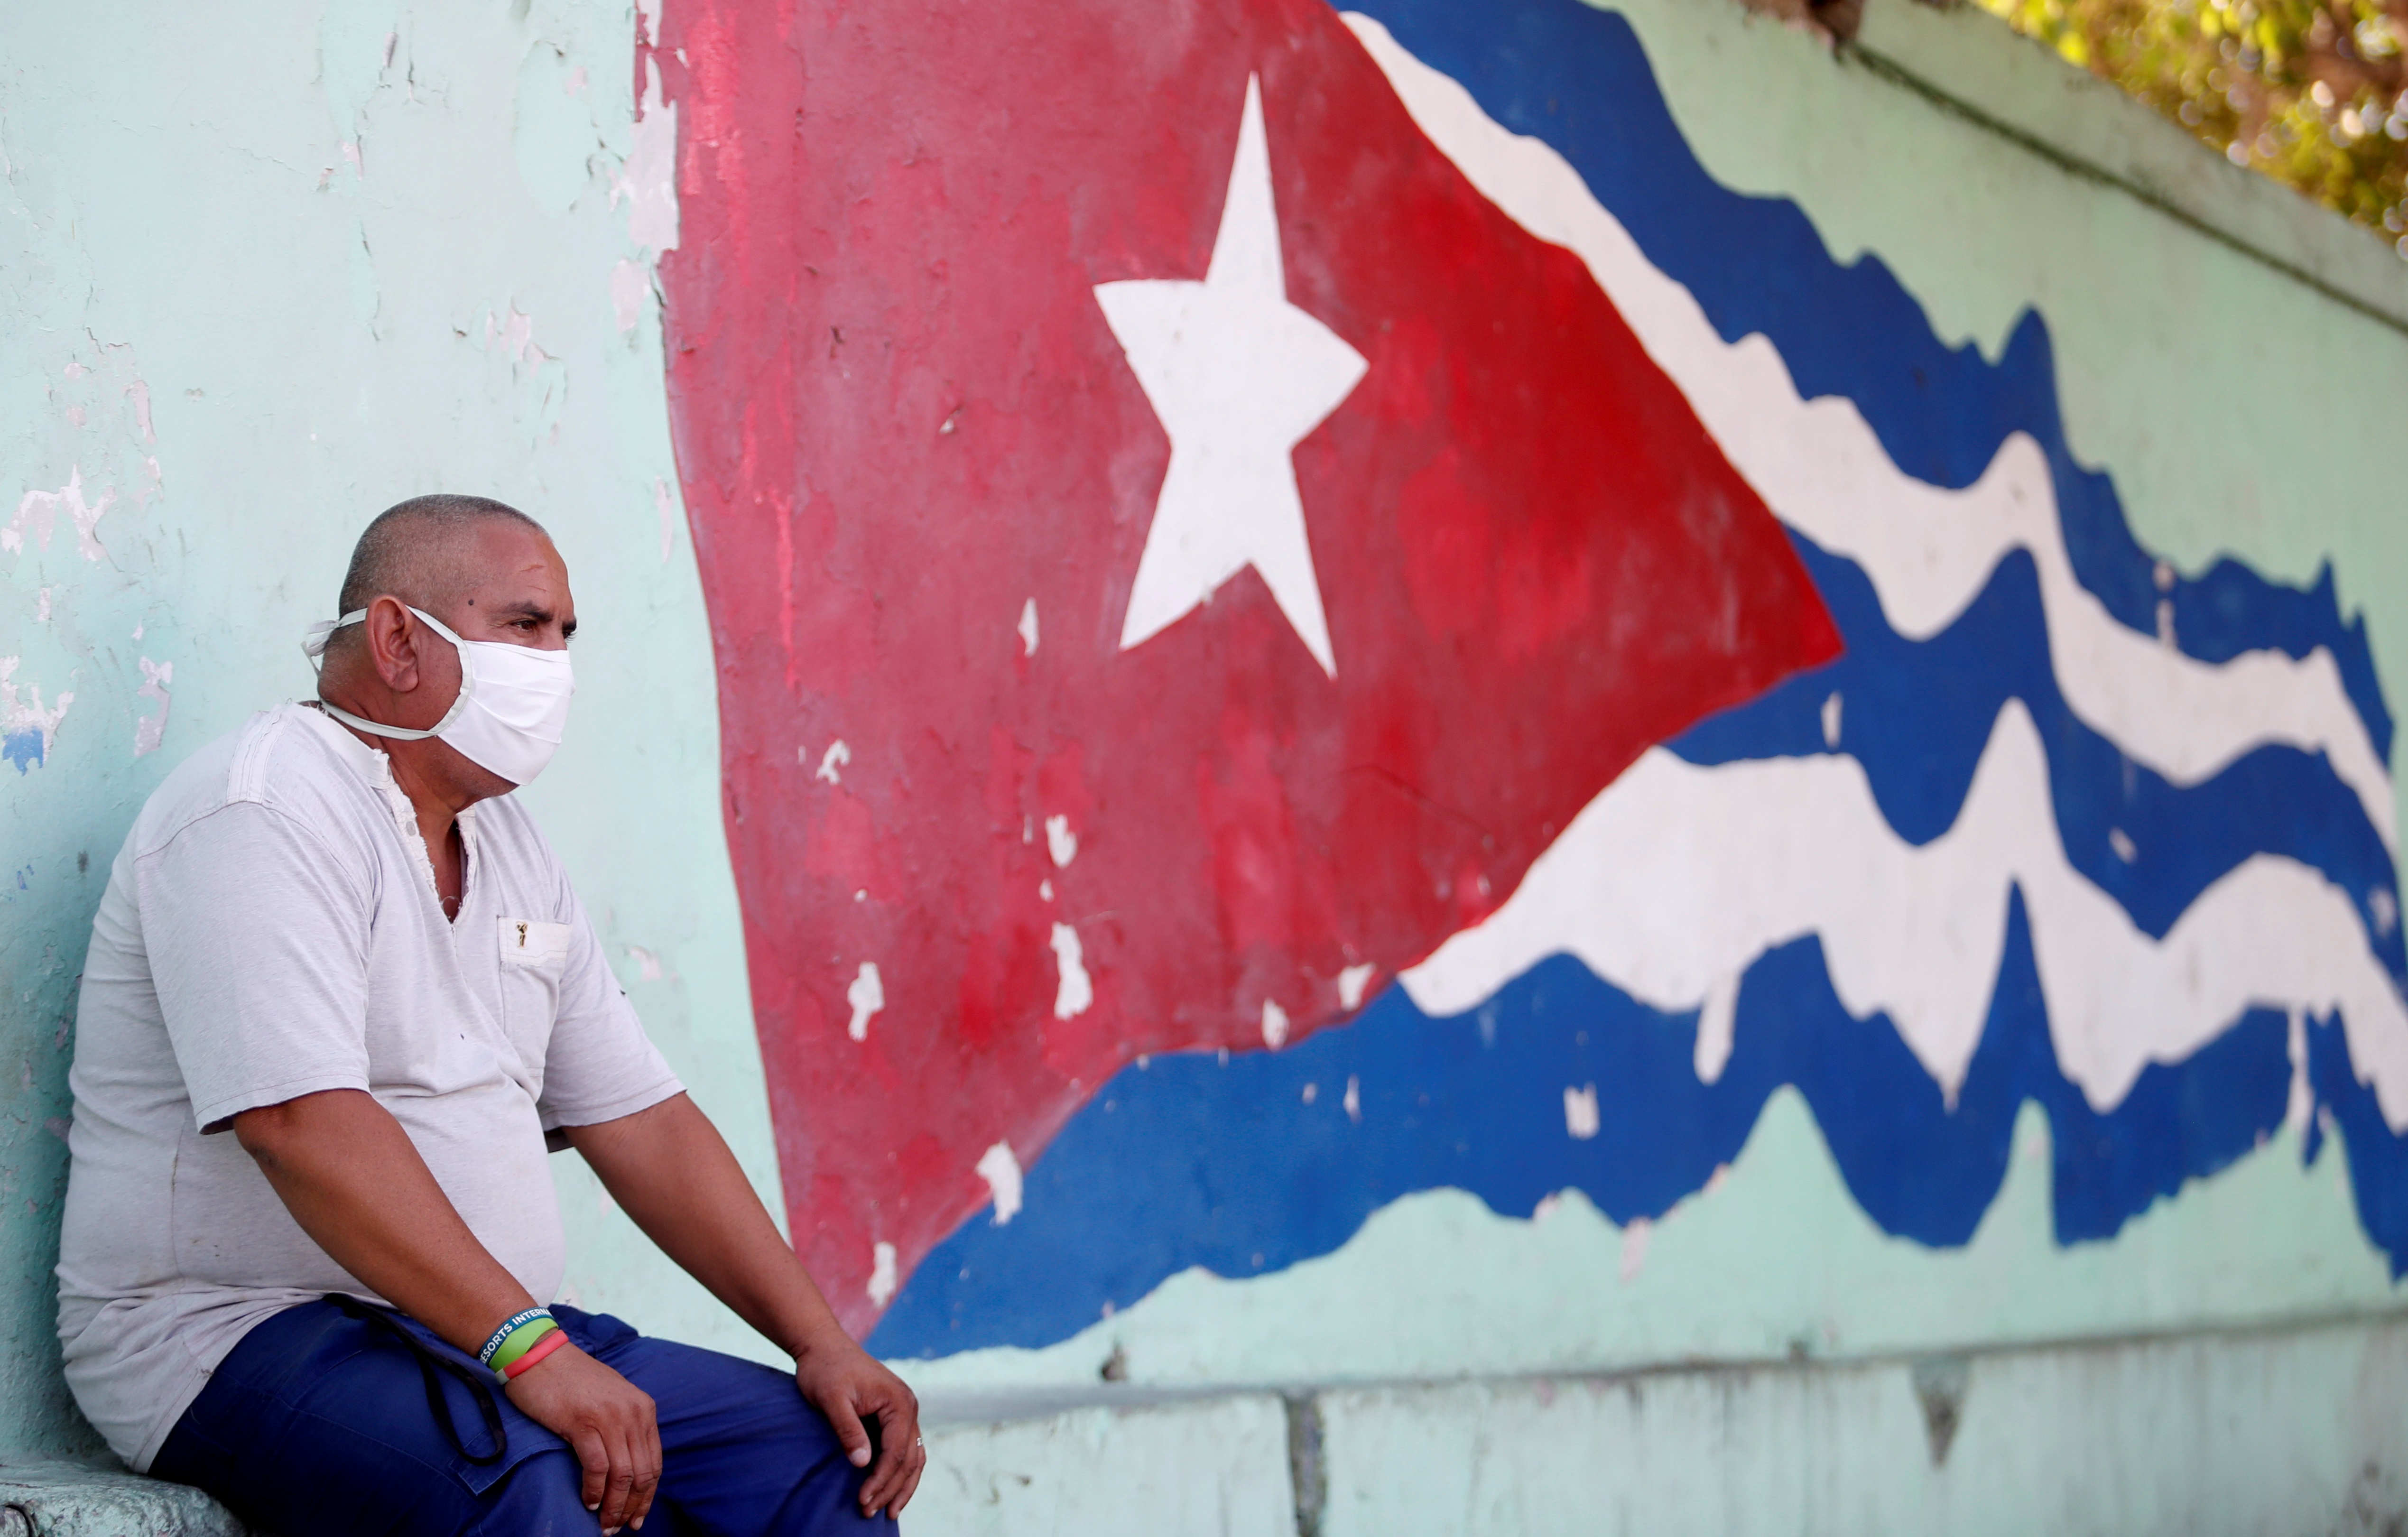 Periódico cubano denuncia modalidad de tortura contra ciudadanos disidentes